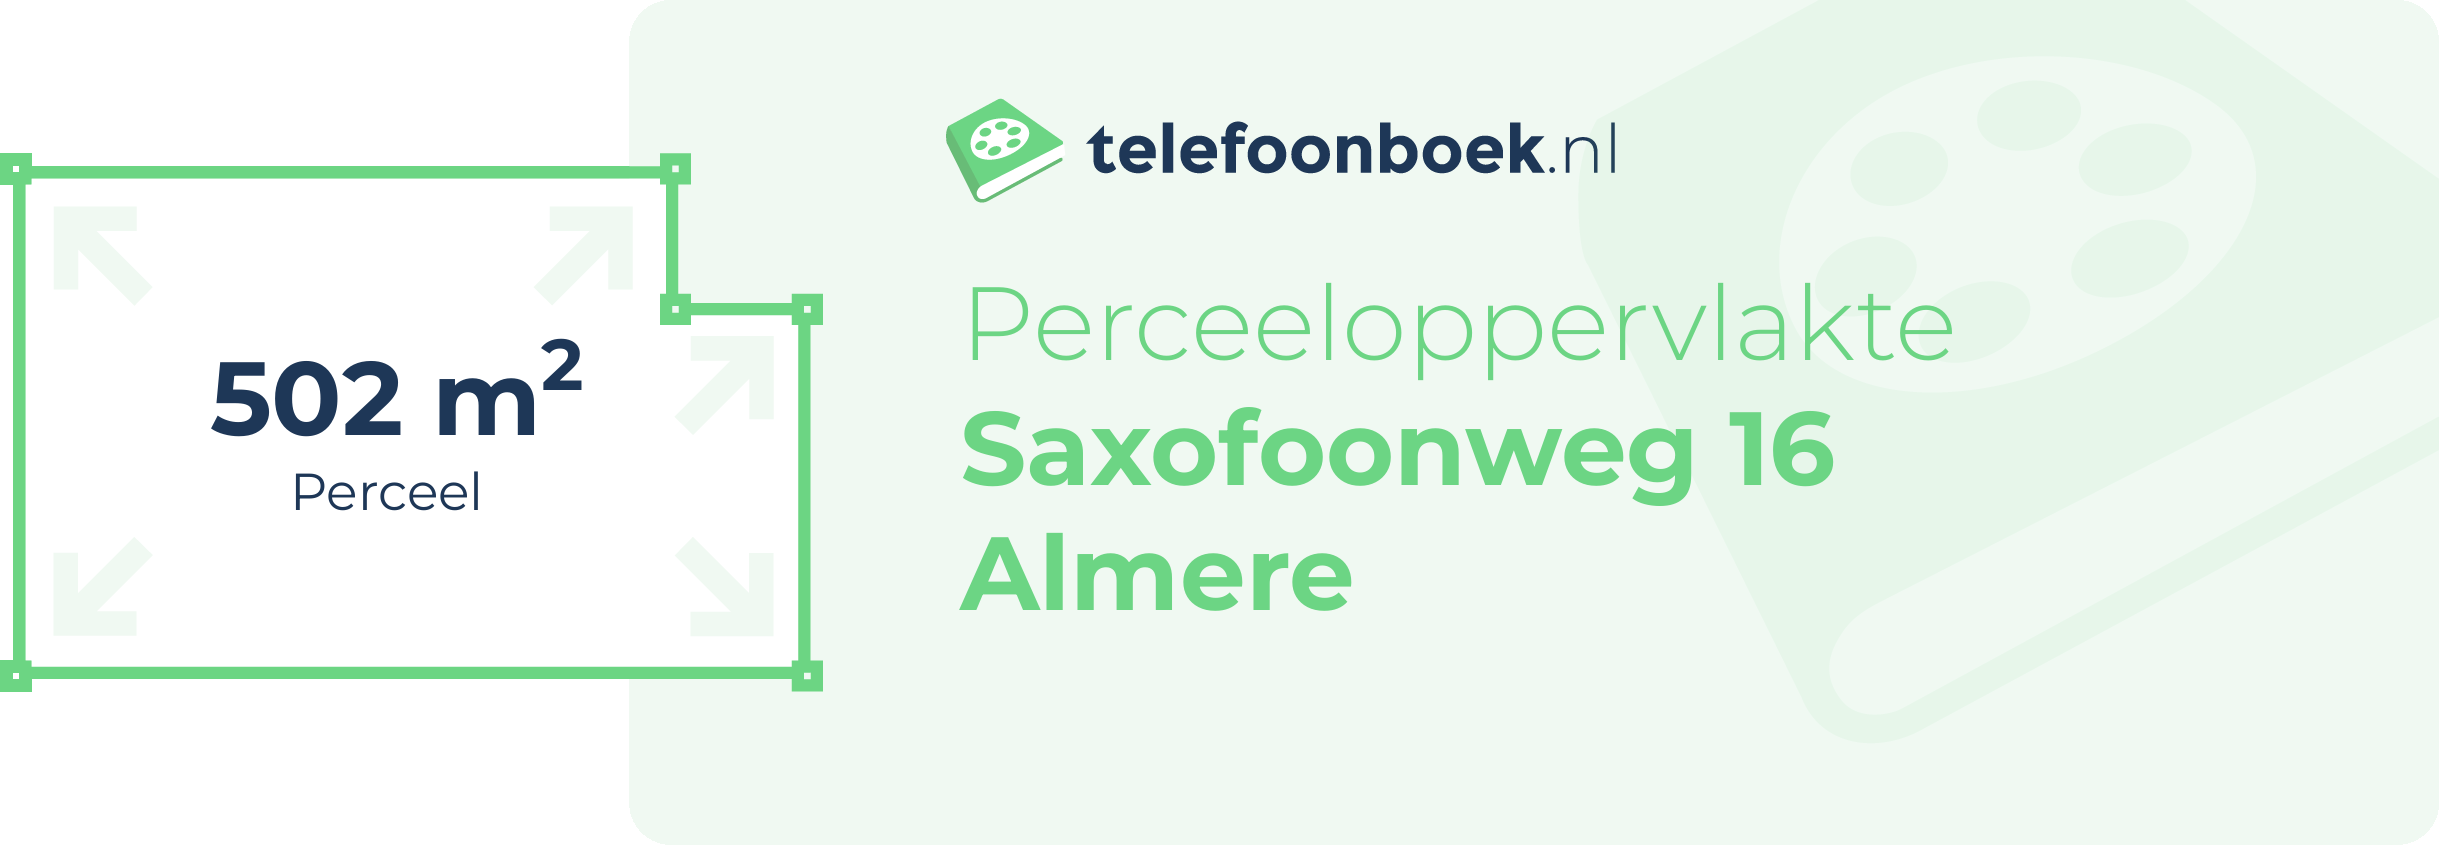 Perceeloppervlakte Saxofoonweg 16 Almere